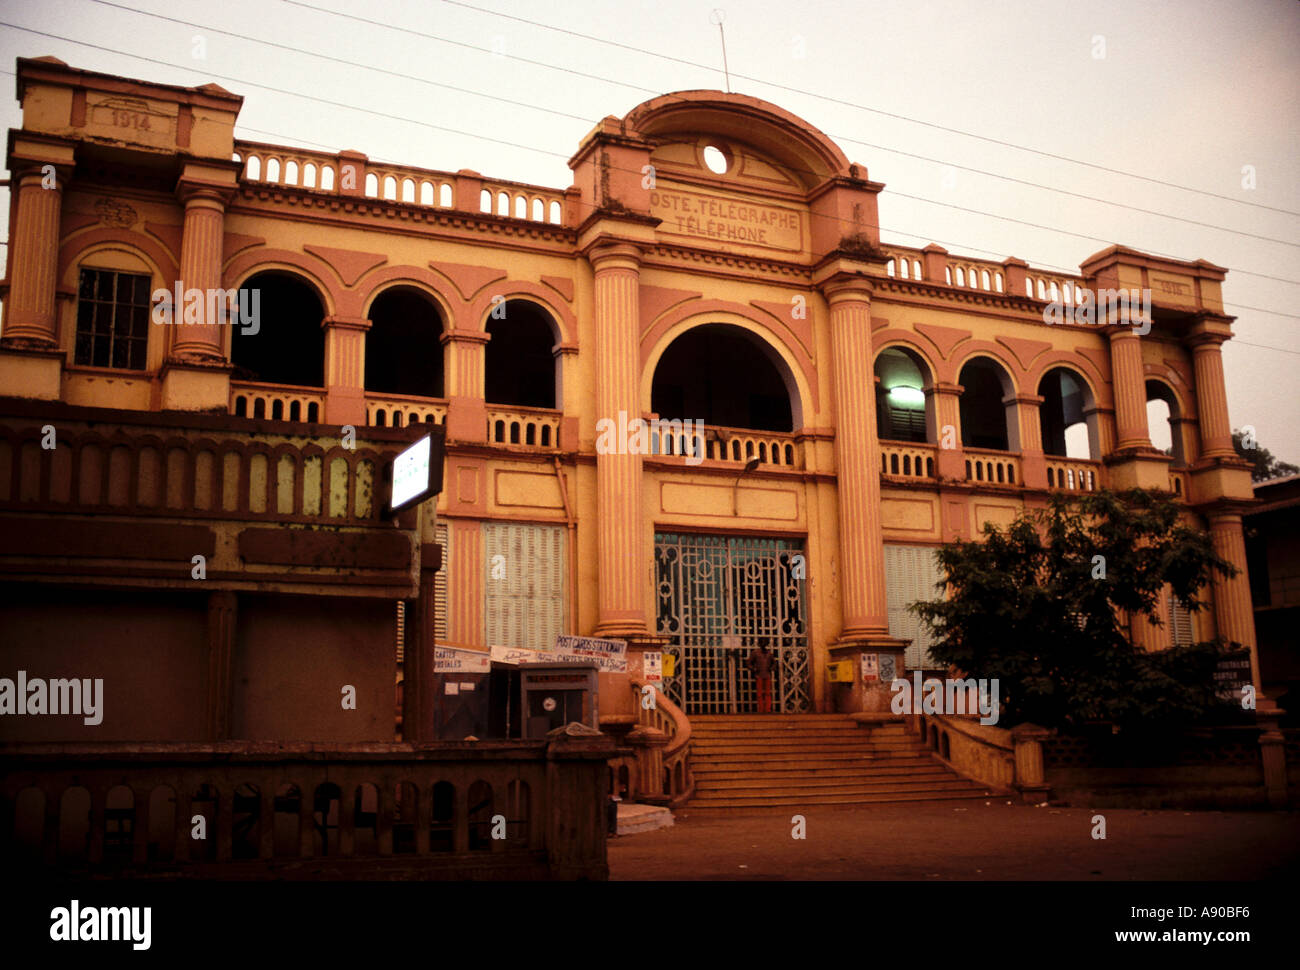 Bureau de poste bamako mali Photo Stock - Alamy